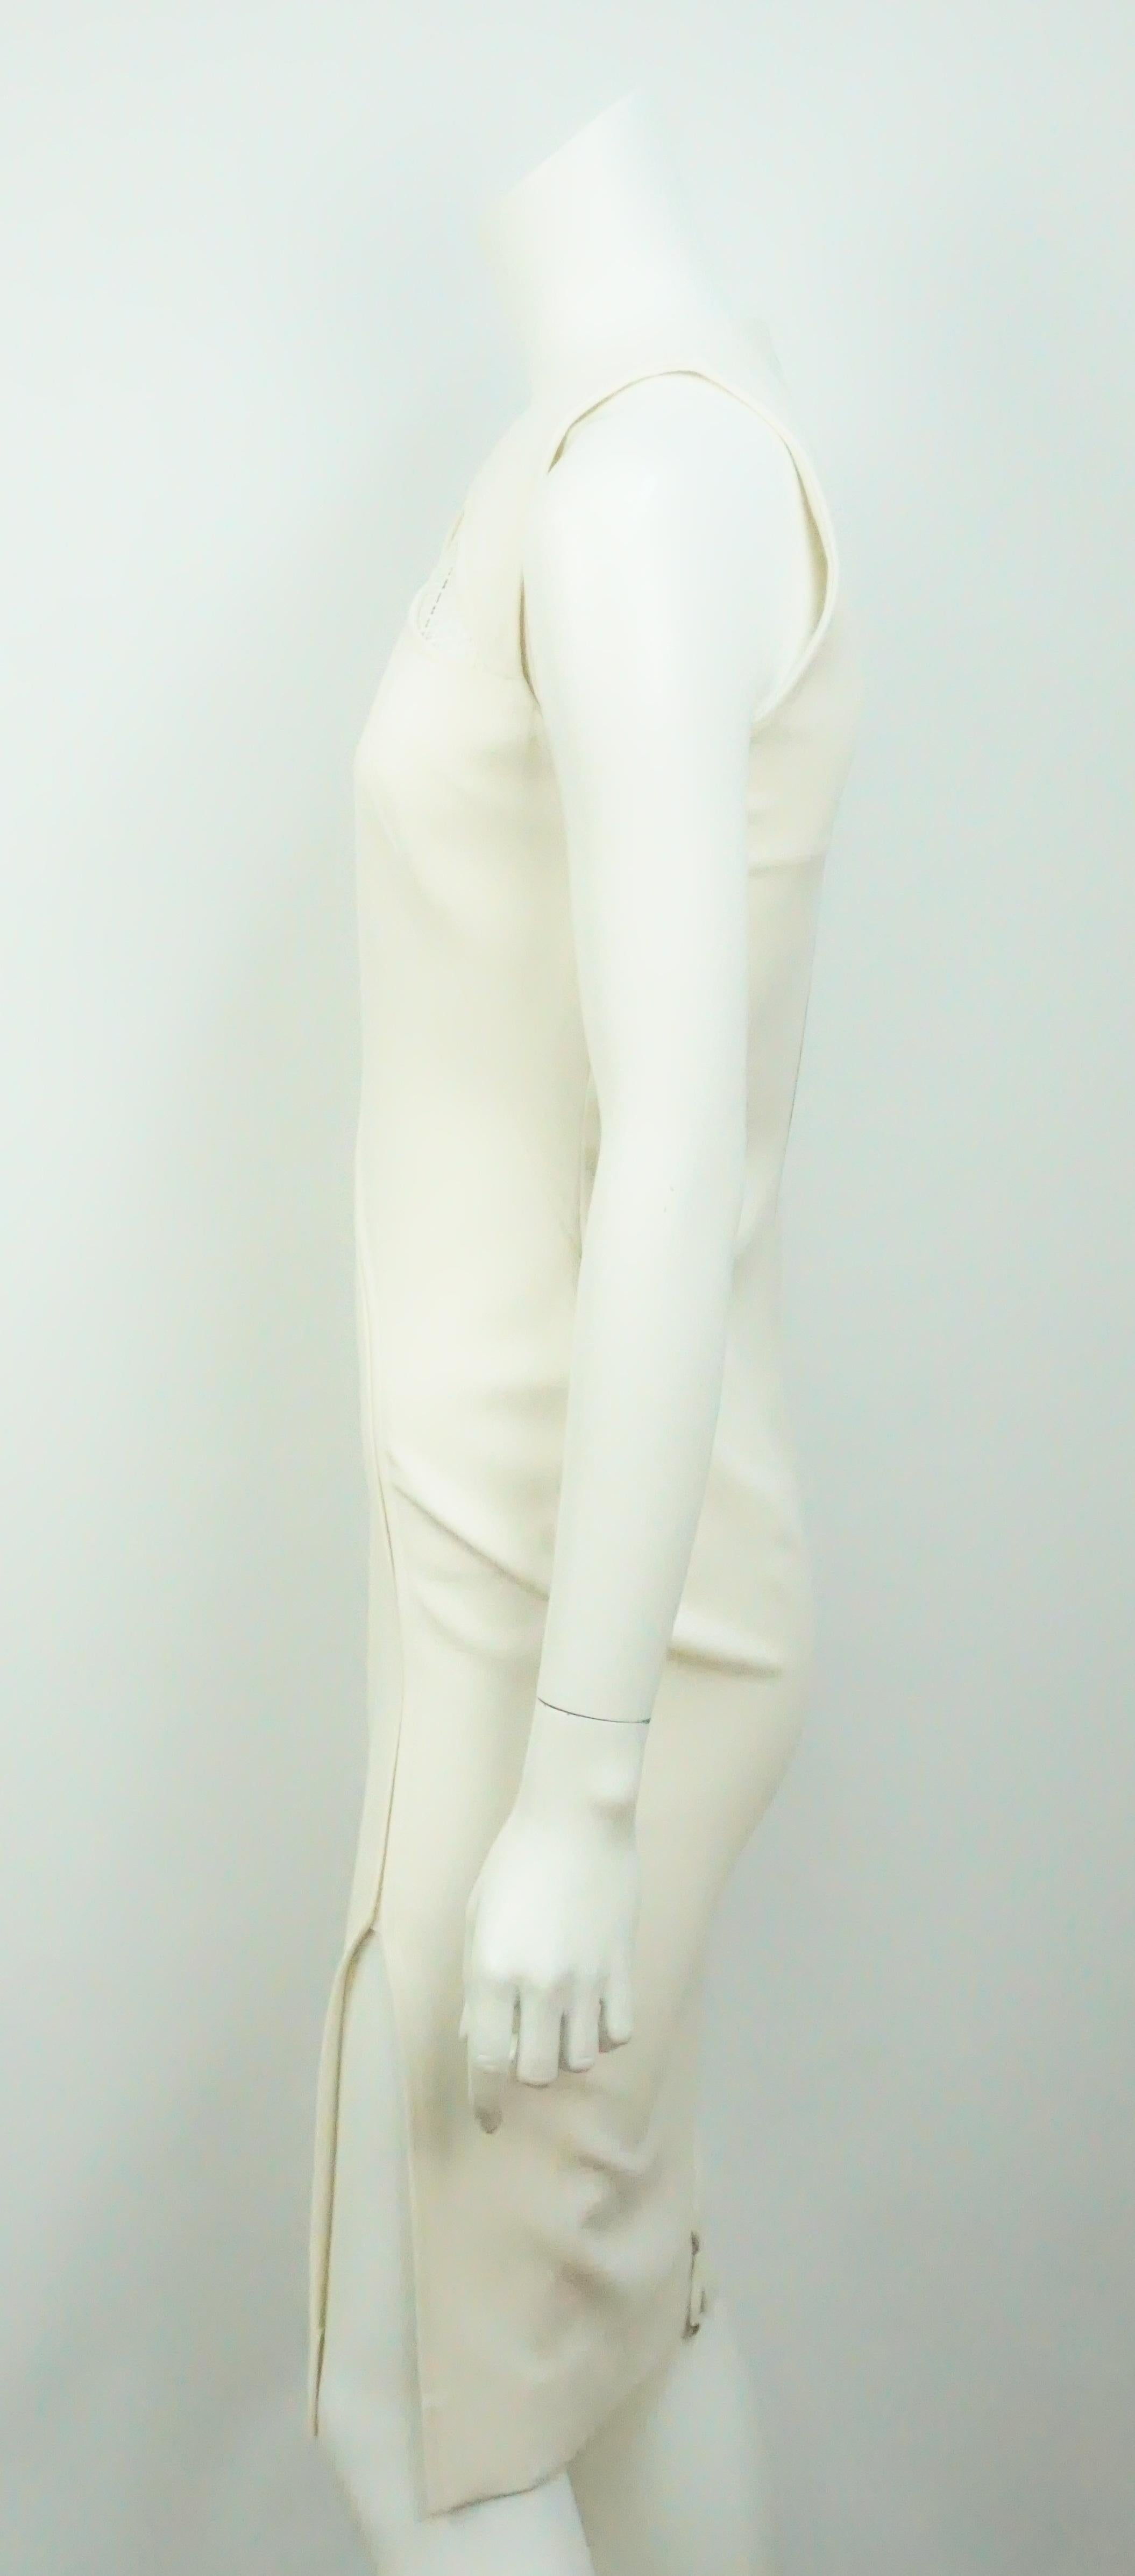 Robe ivoire Victoria Beckham-4. Cette magnifique robe sans manches est en excellent état. Il présente des découpes en dentelle et un petit slip sur le côté. La robe est un mélange de soie et de laine.
Mesures
Poitrine : 33
Taille : 28